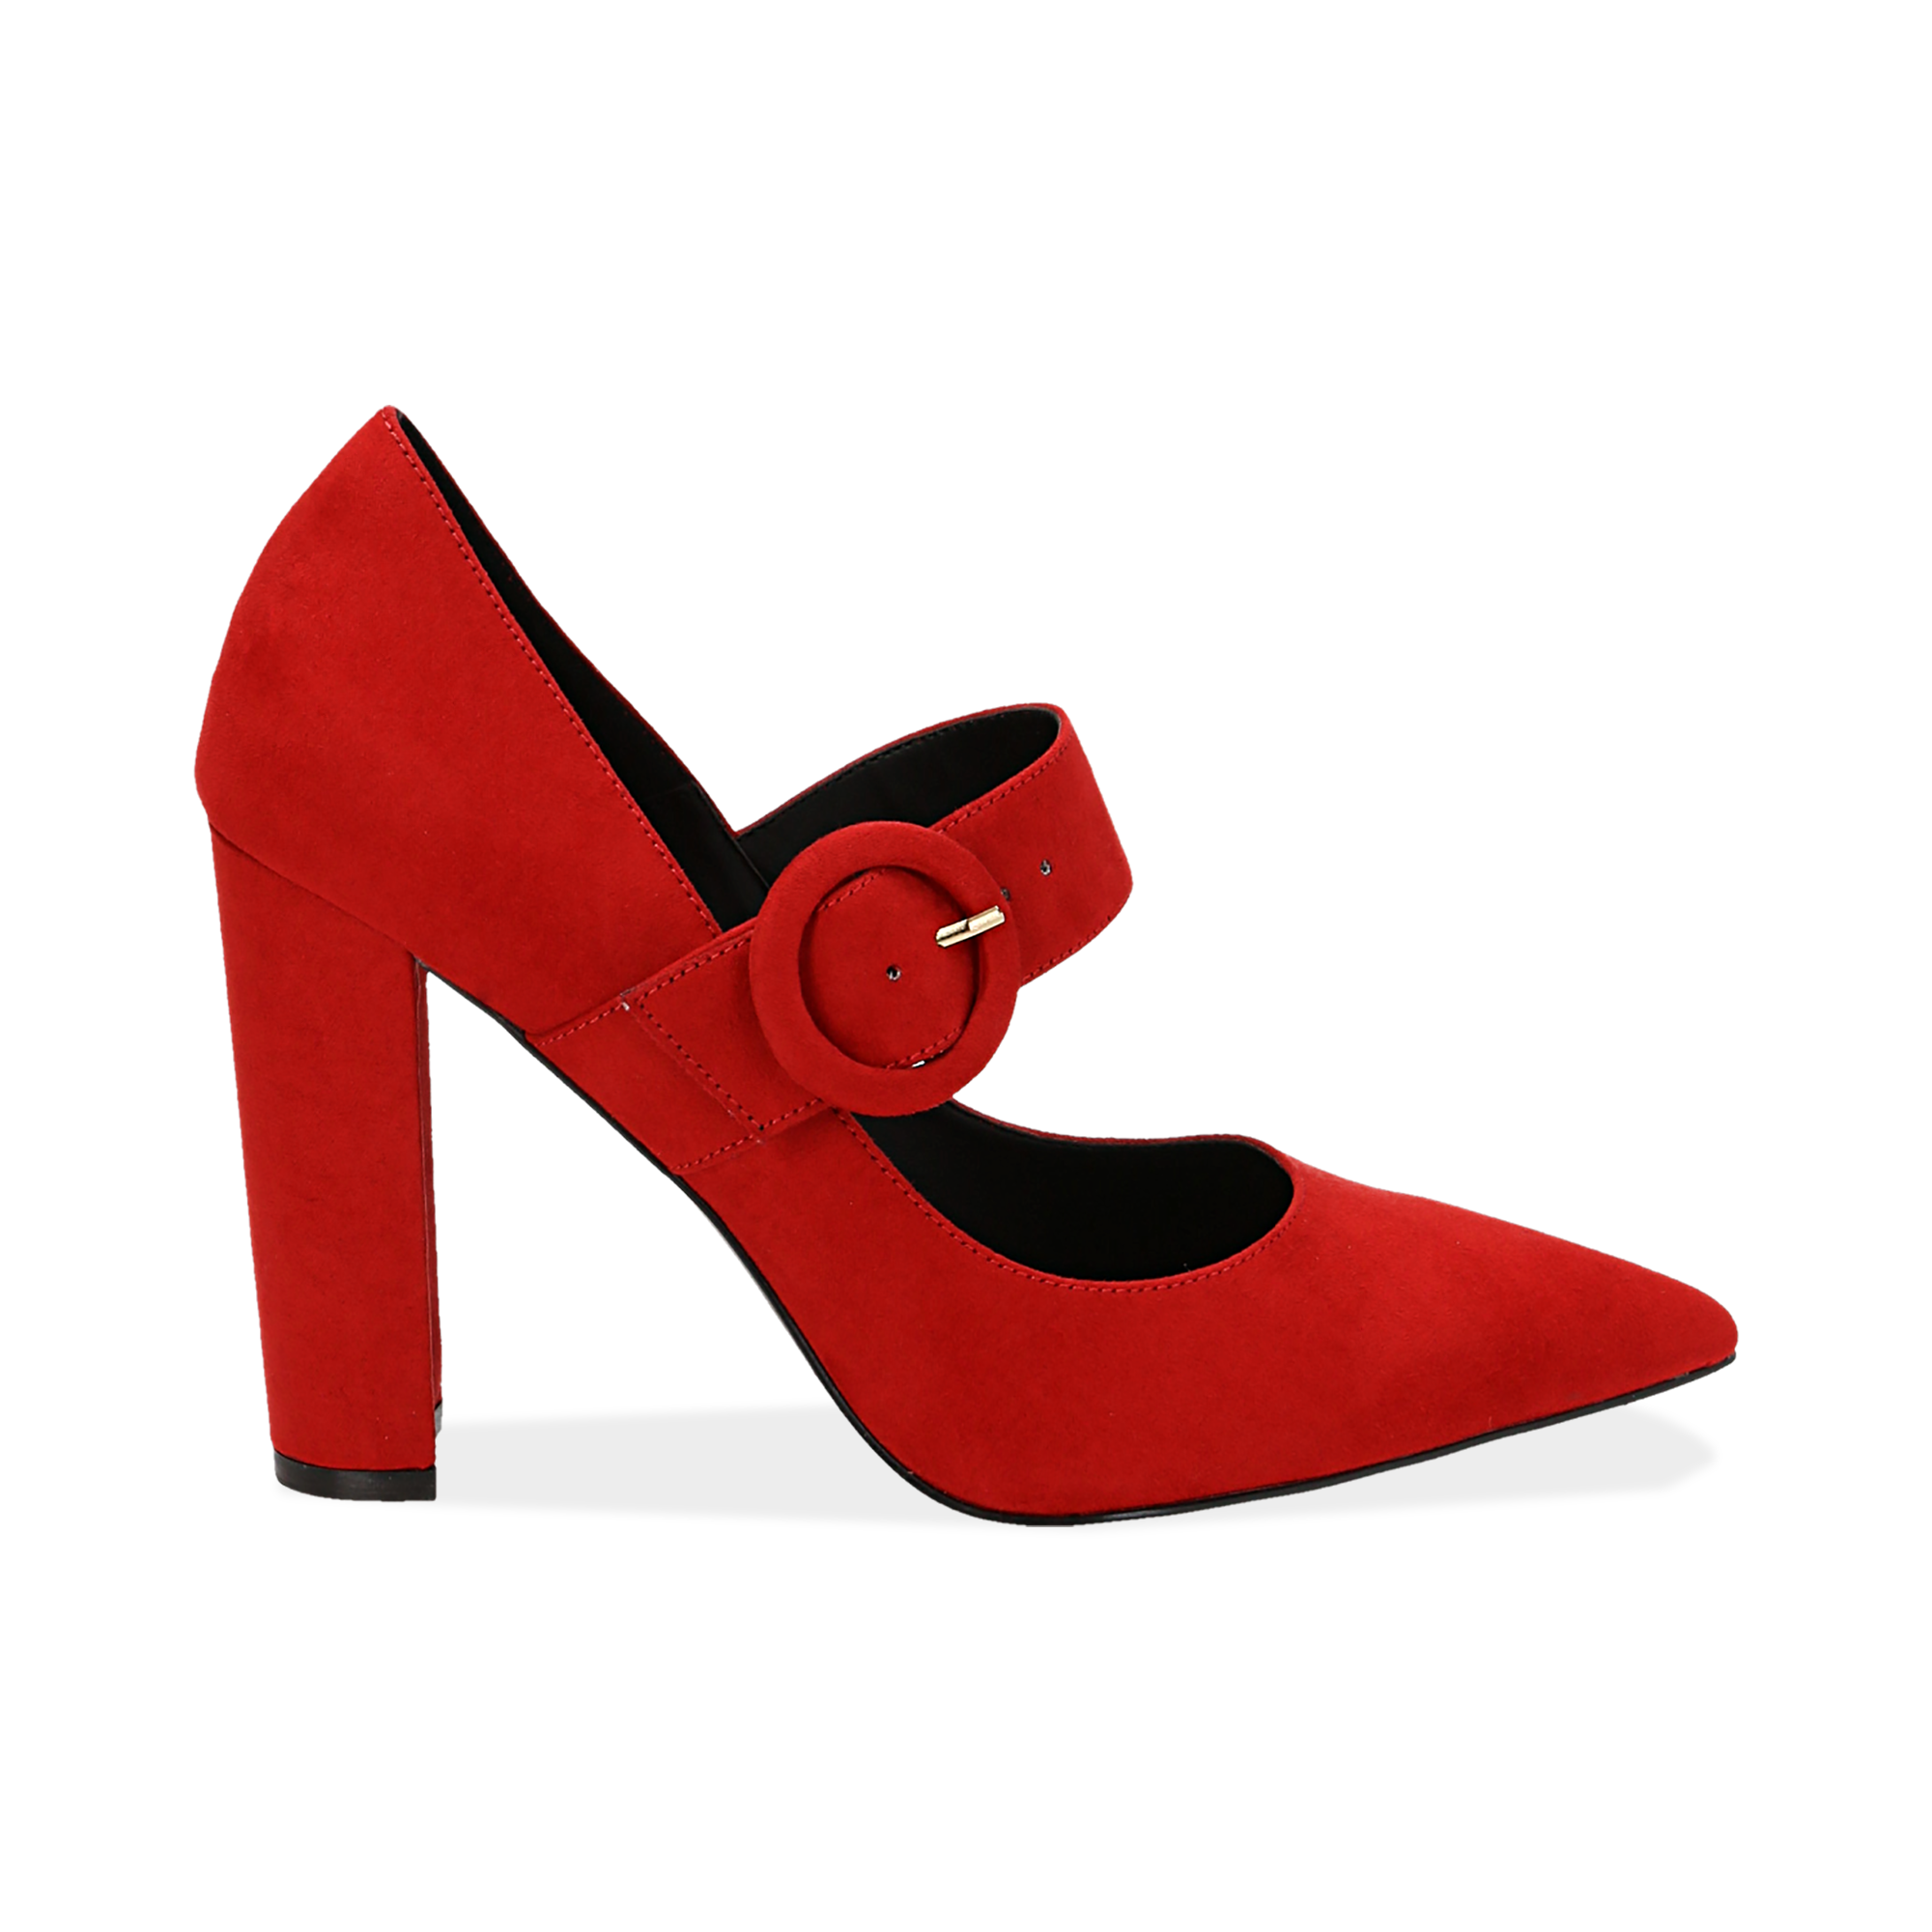 scarpe tacco rosse